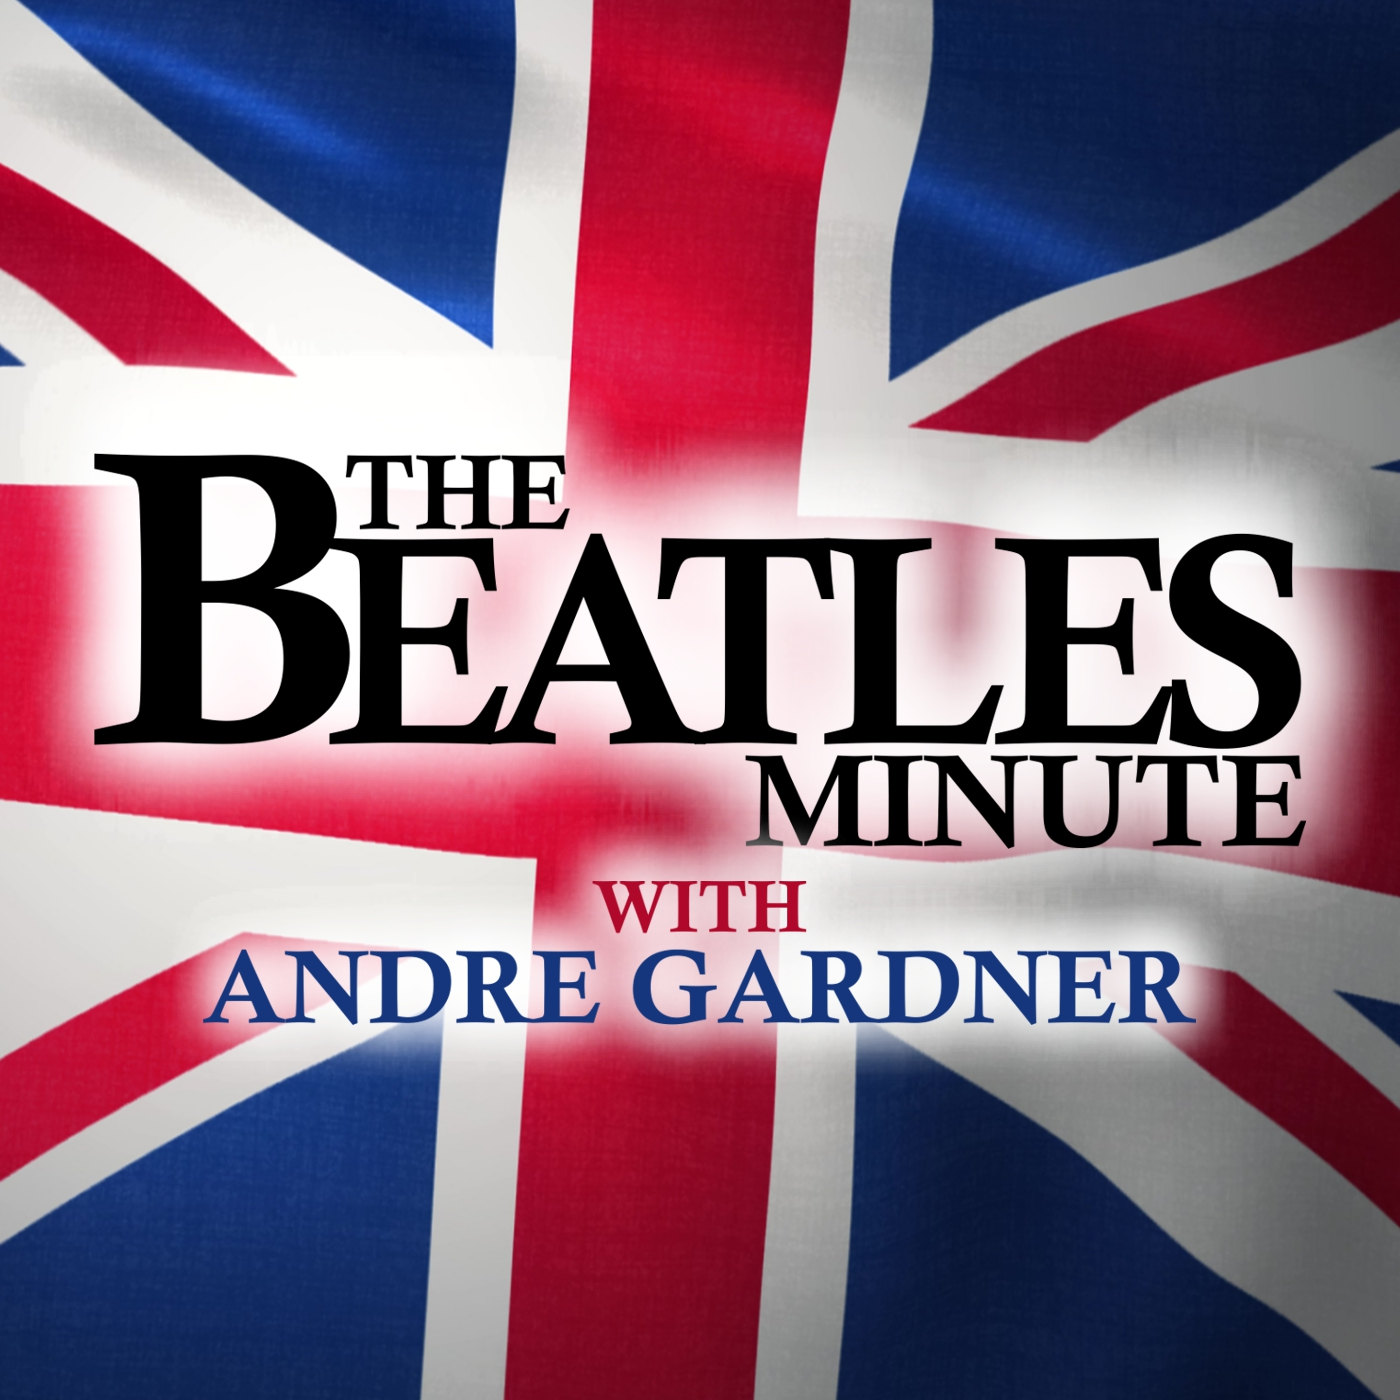 Beatles Minute - week of September 2, 2019